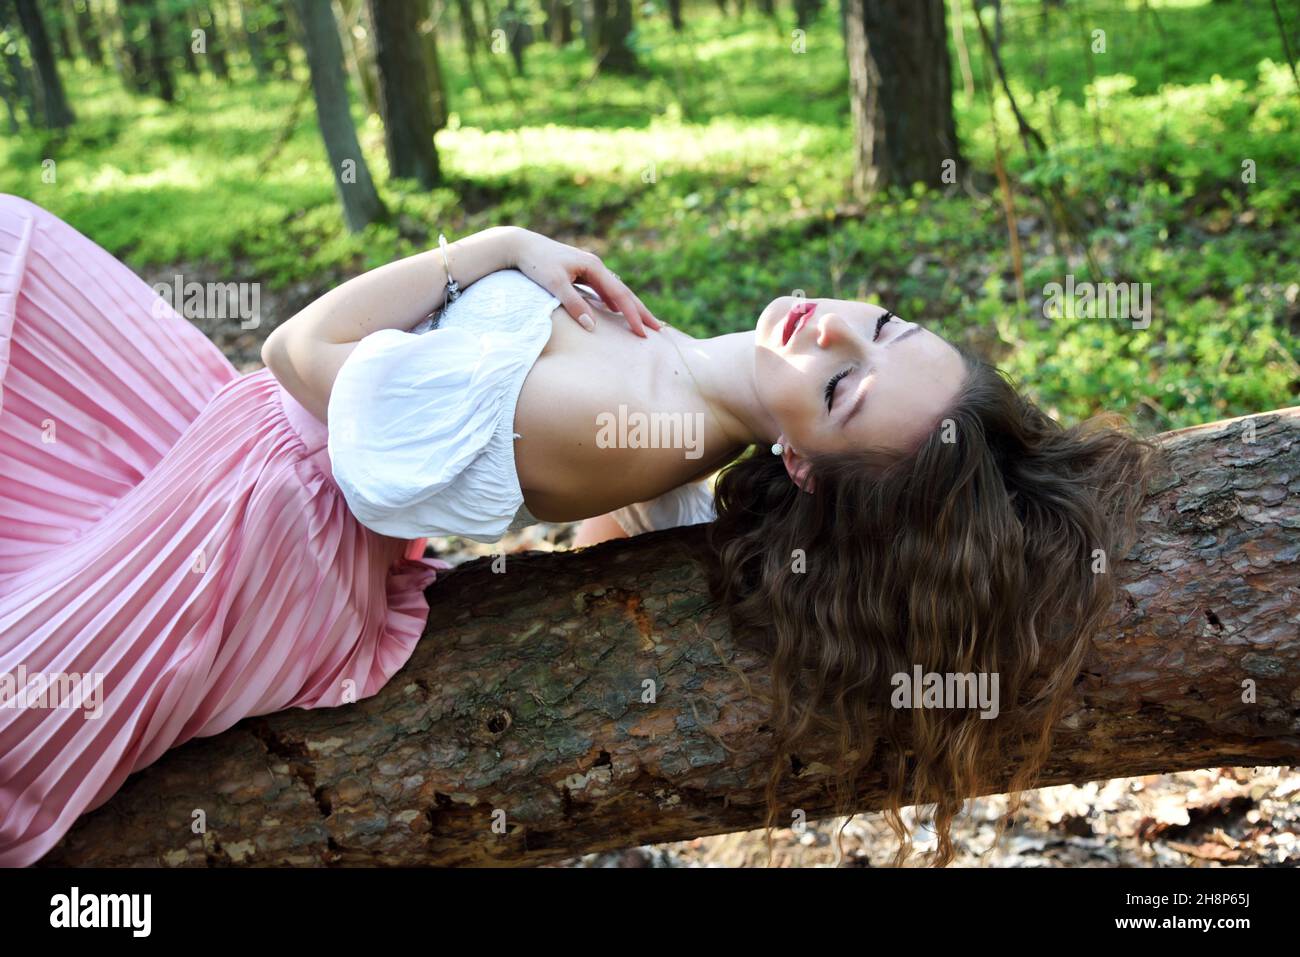 Jolie, jeune femme posant dans la forêt.Environnement vert au printemps en Pologne. Banque D'Images